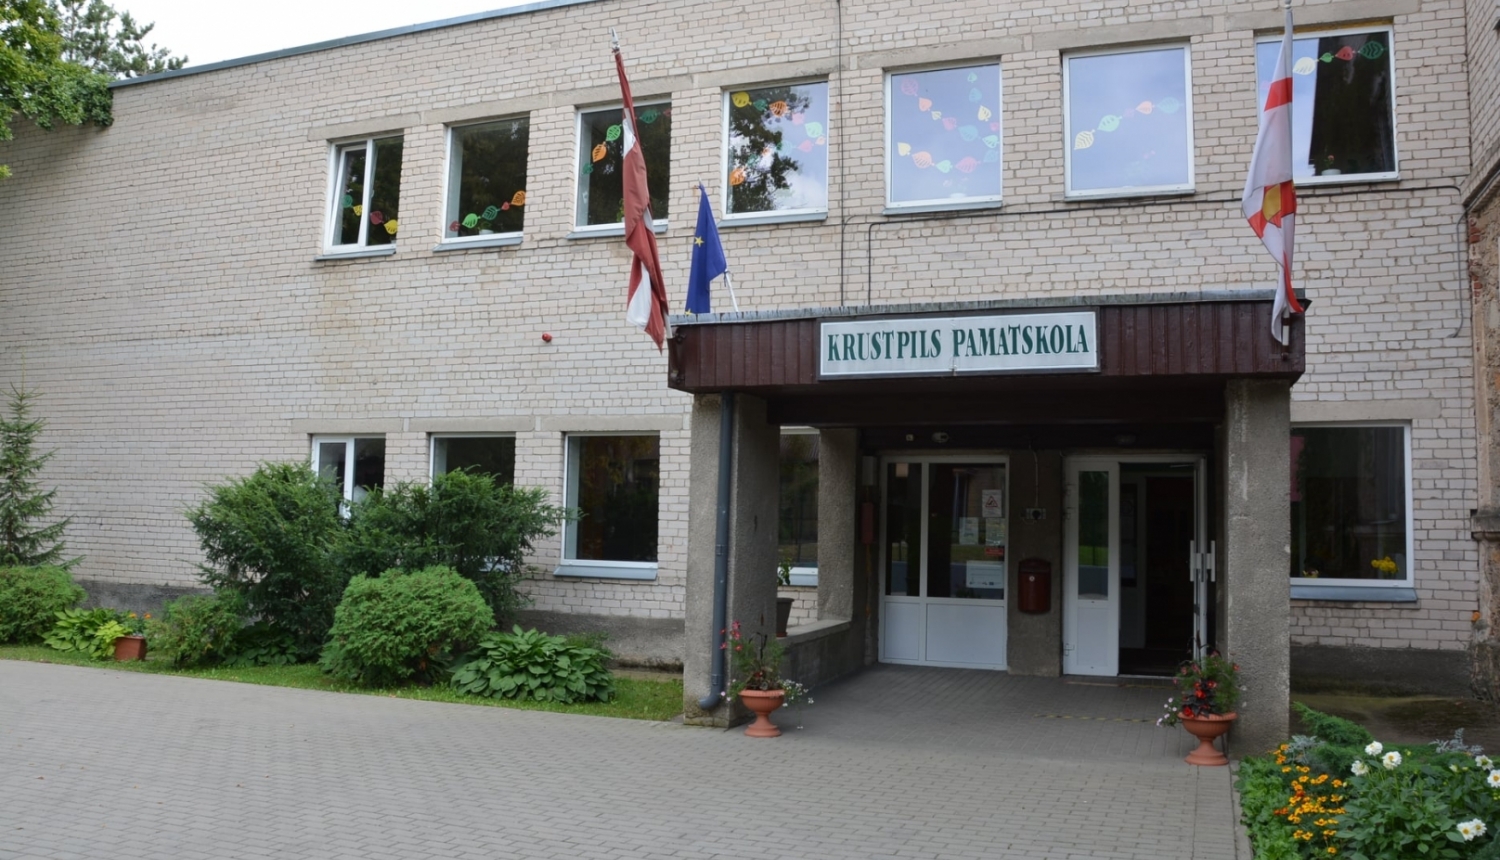 Krustpils pamatskola